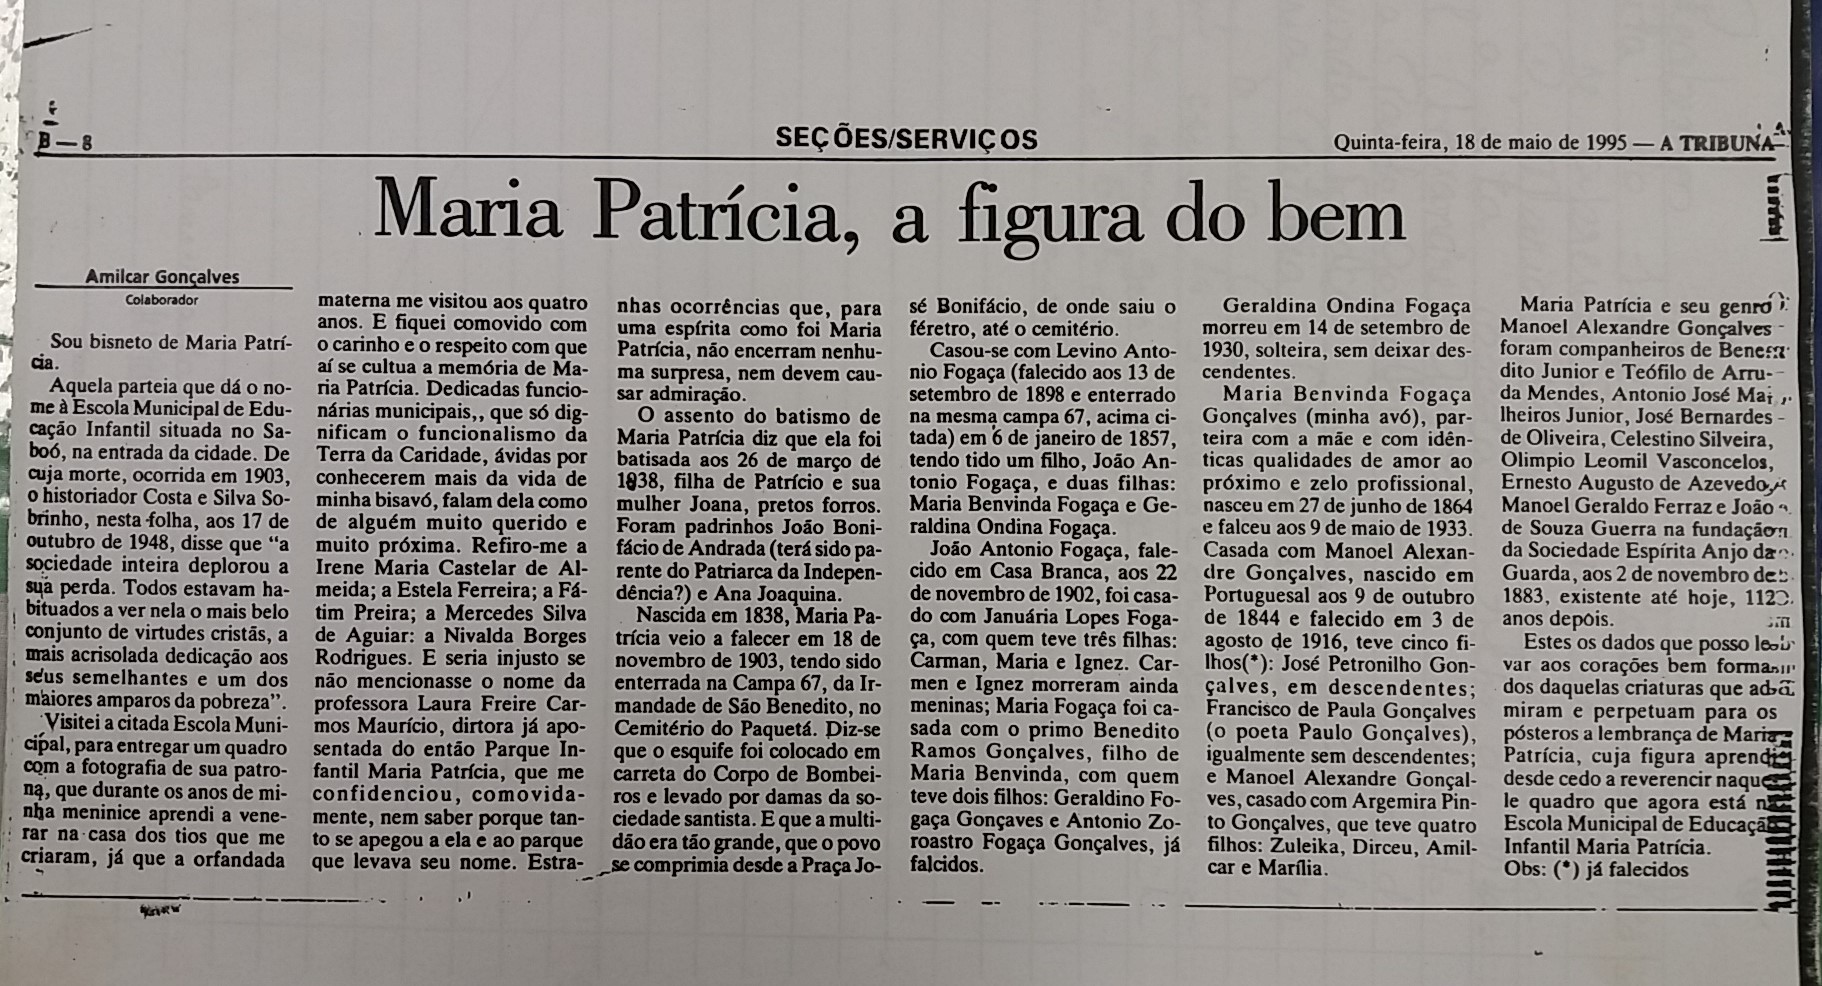 Artigo escrito pelo bisneto de Maria Patrícia, publicado em A Tribuna de 18 de maio de 1995. (Acervo da EMEI Maria Patrícia)